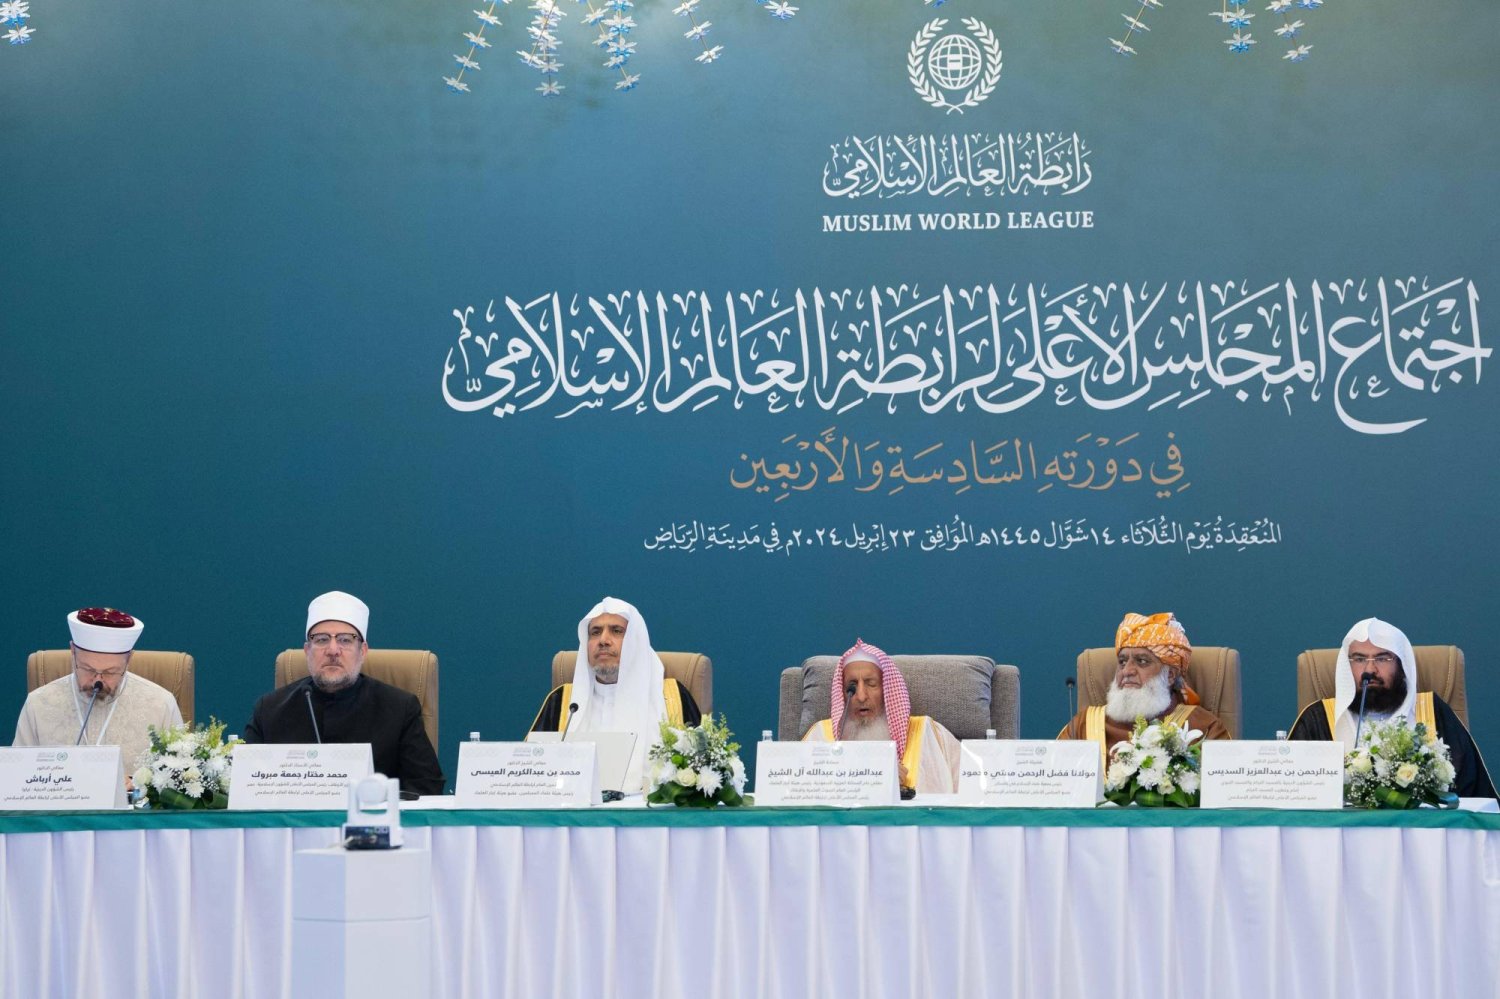 7 قضايا ملِحَّة على جدول أعمال الدورة الـ46 للمجلس الأعلى لرابطة العالم الإسلامي (الشرق الأوسط)